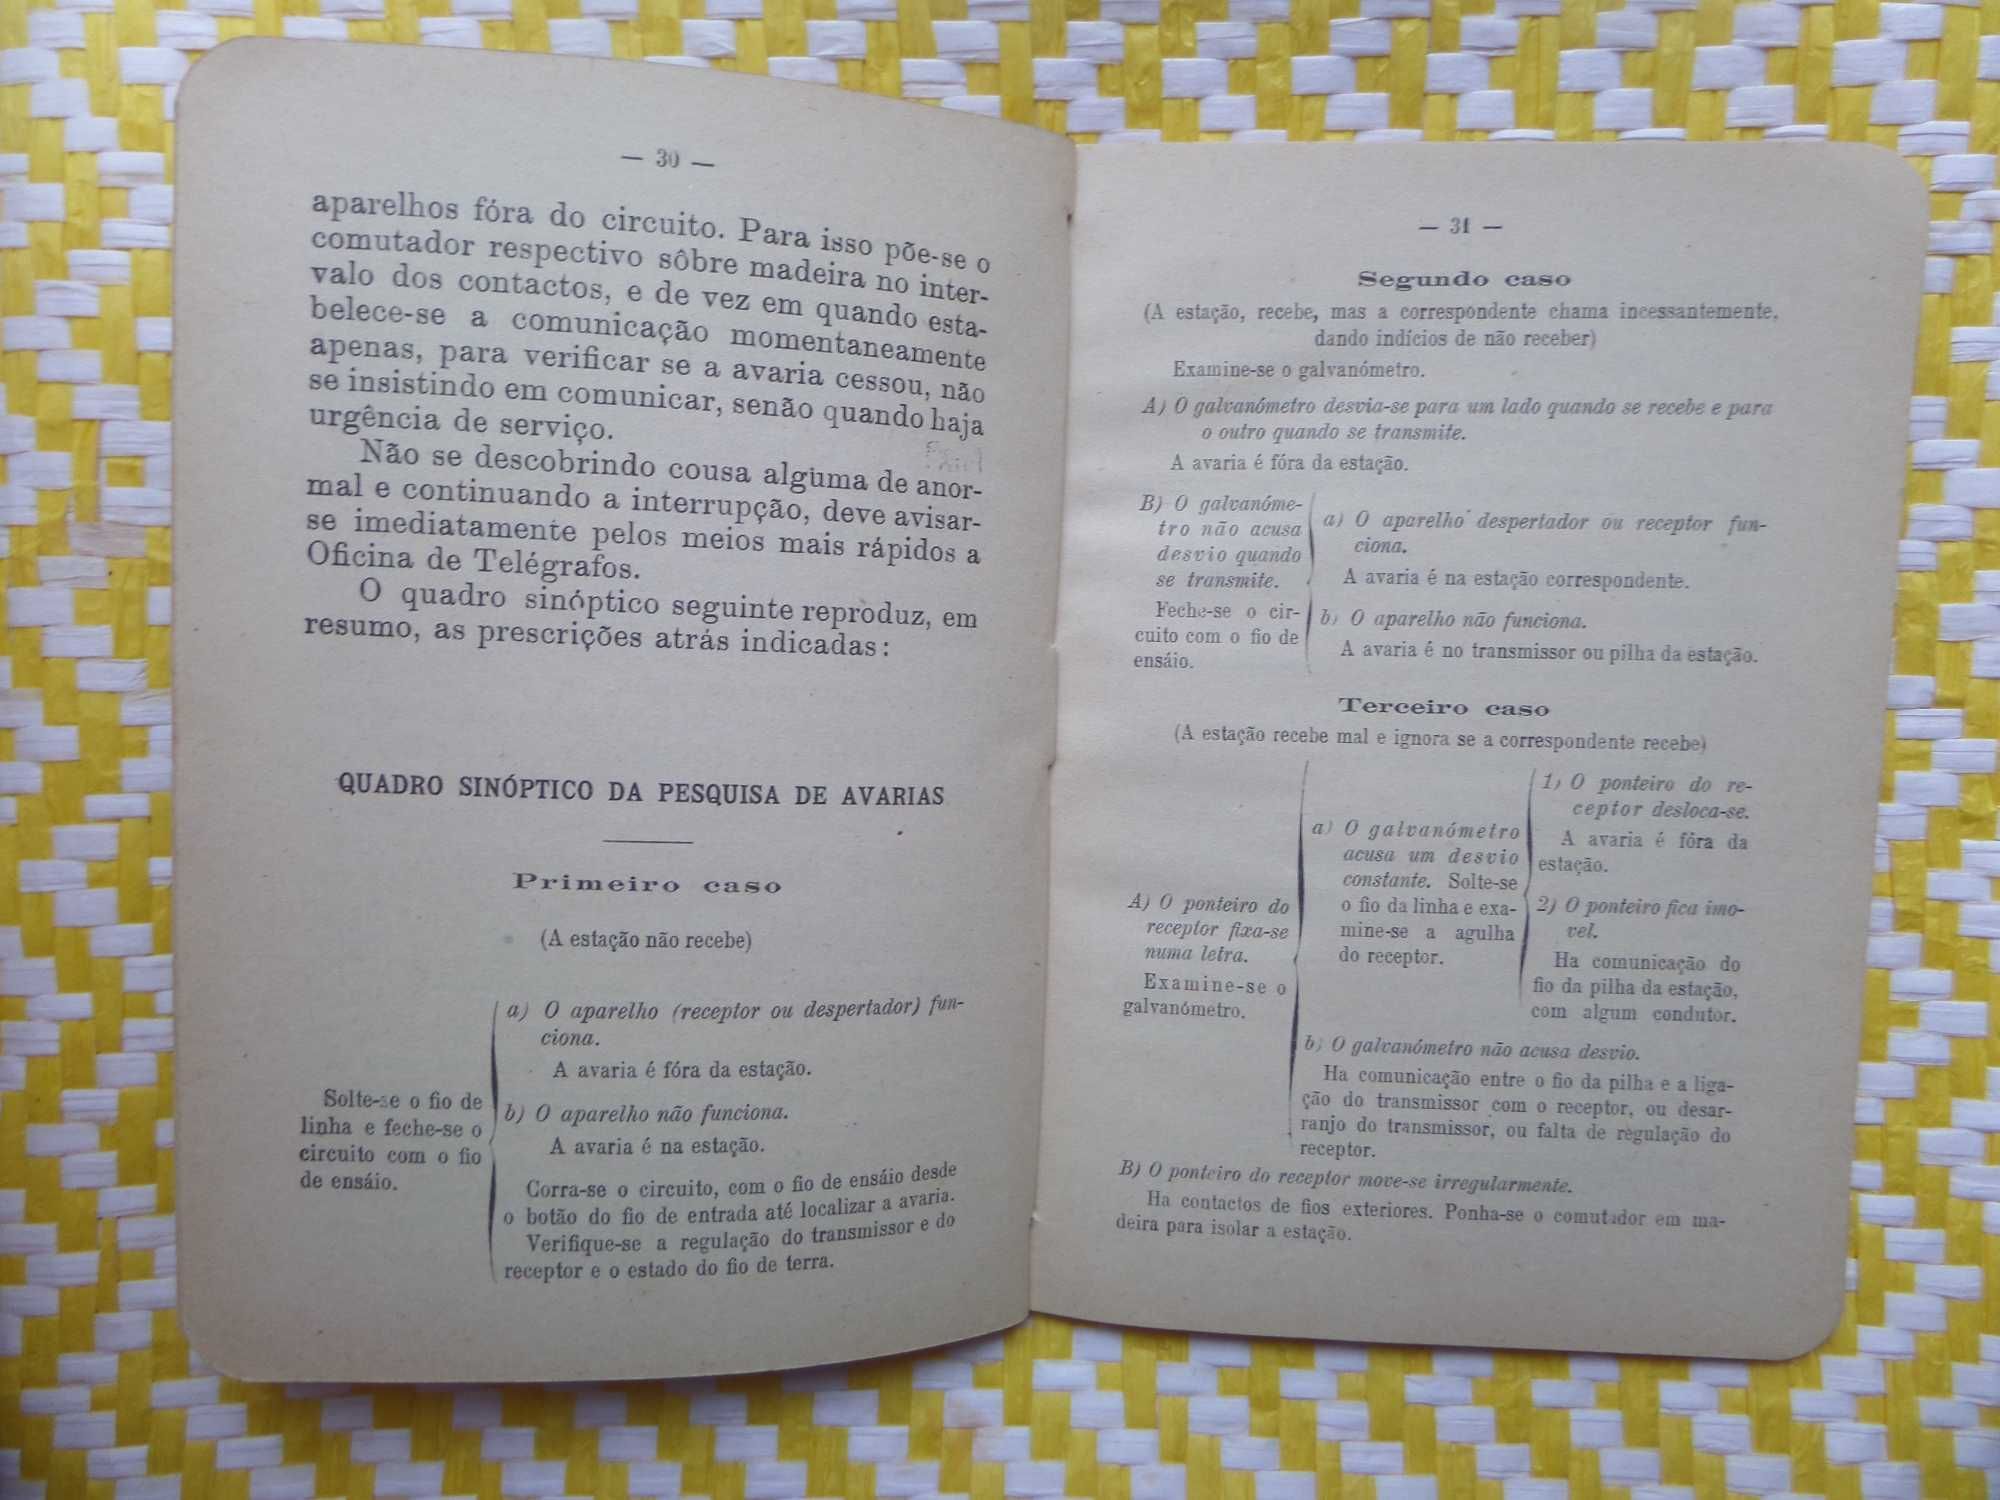 Instruções para o Serviço Telegráfico Telefónico.
Lisboa 1928